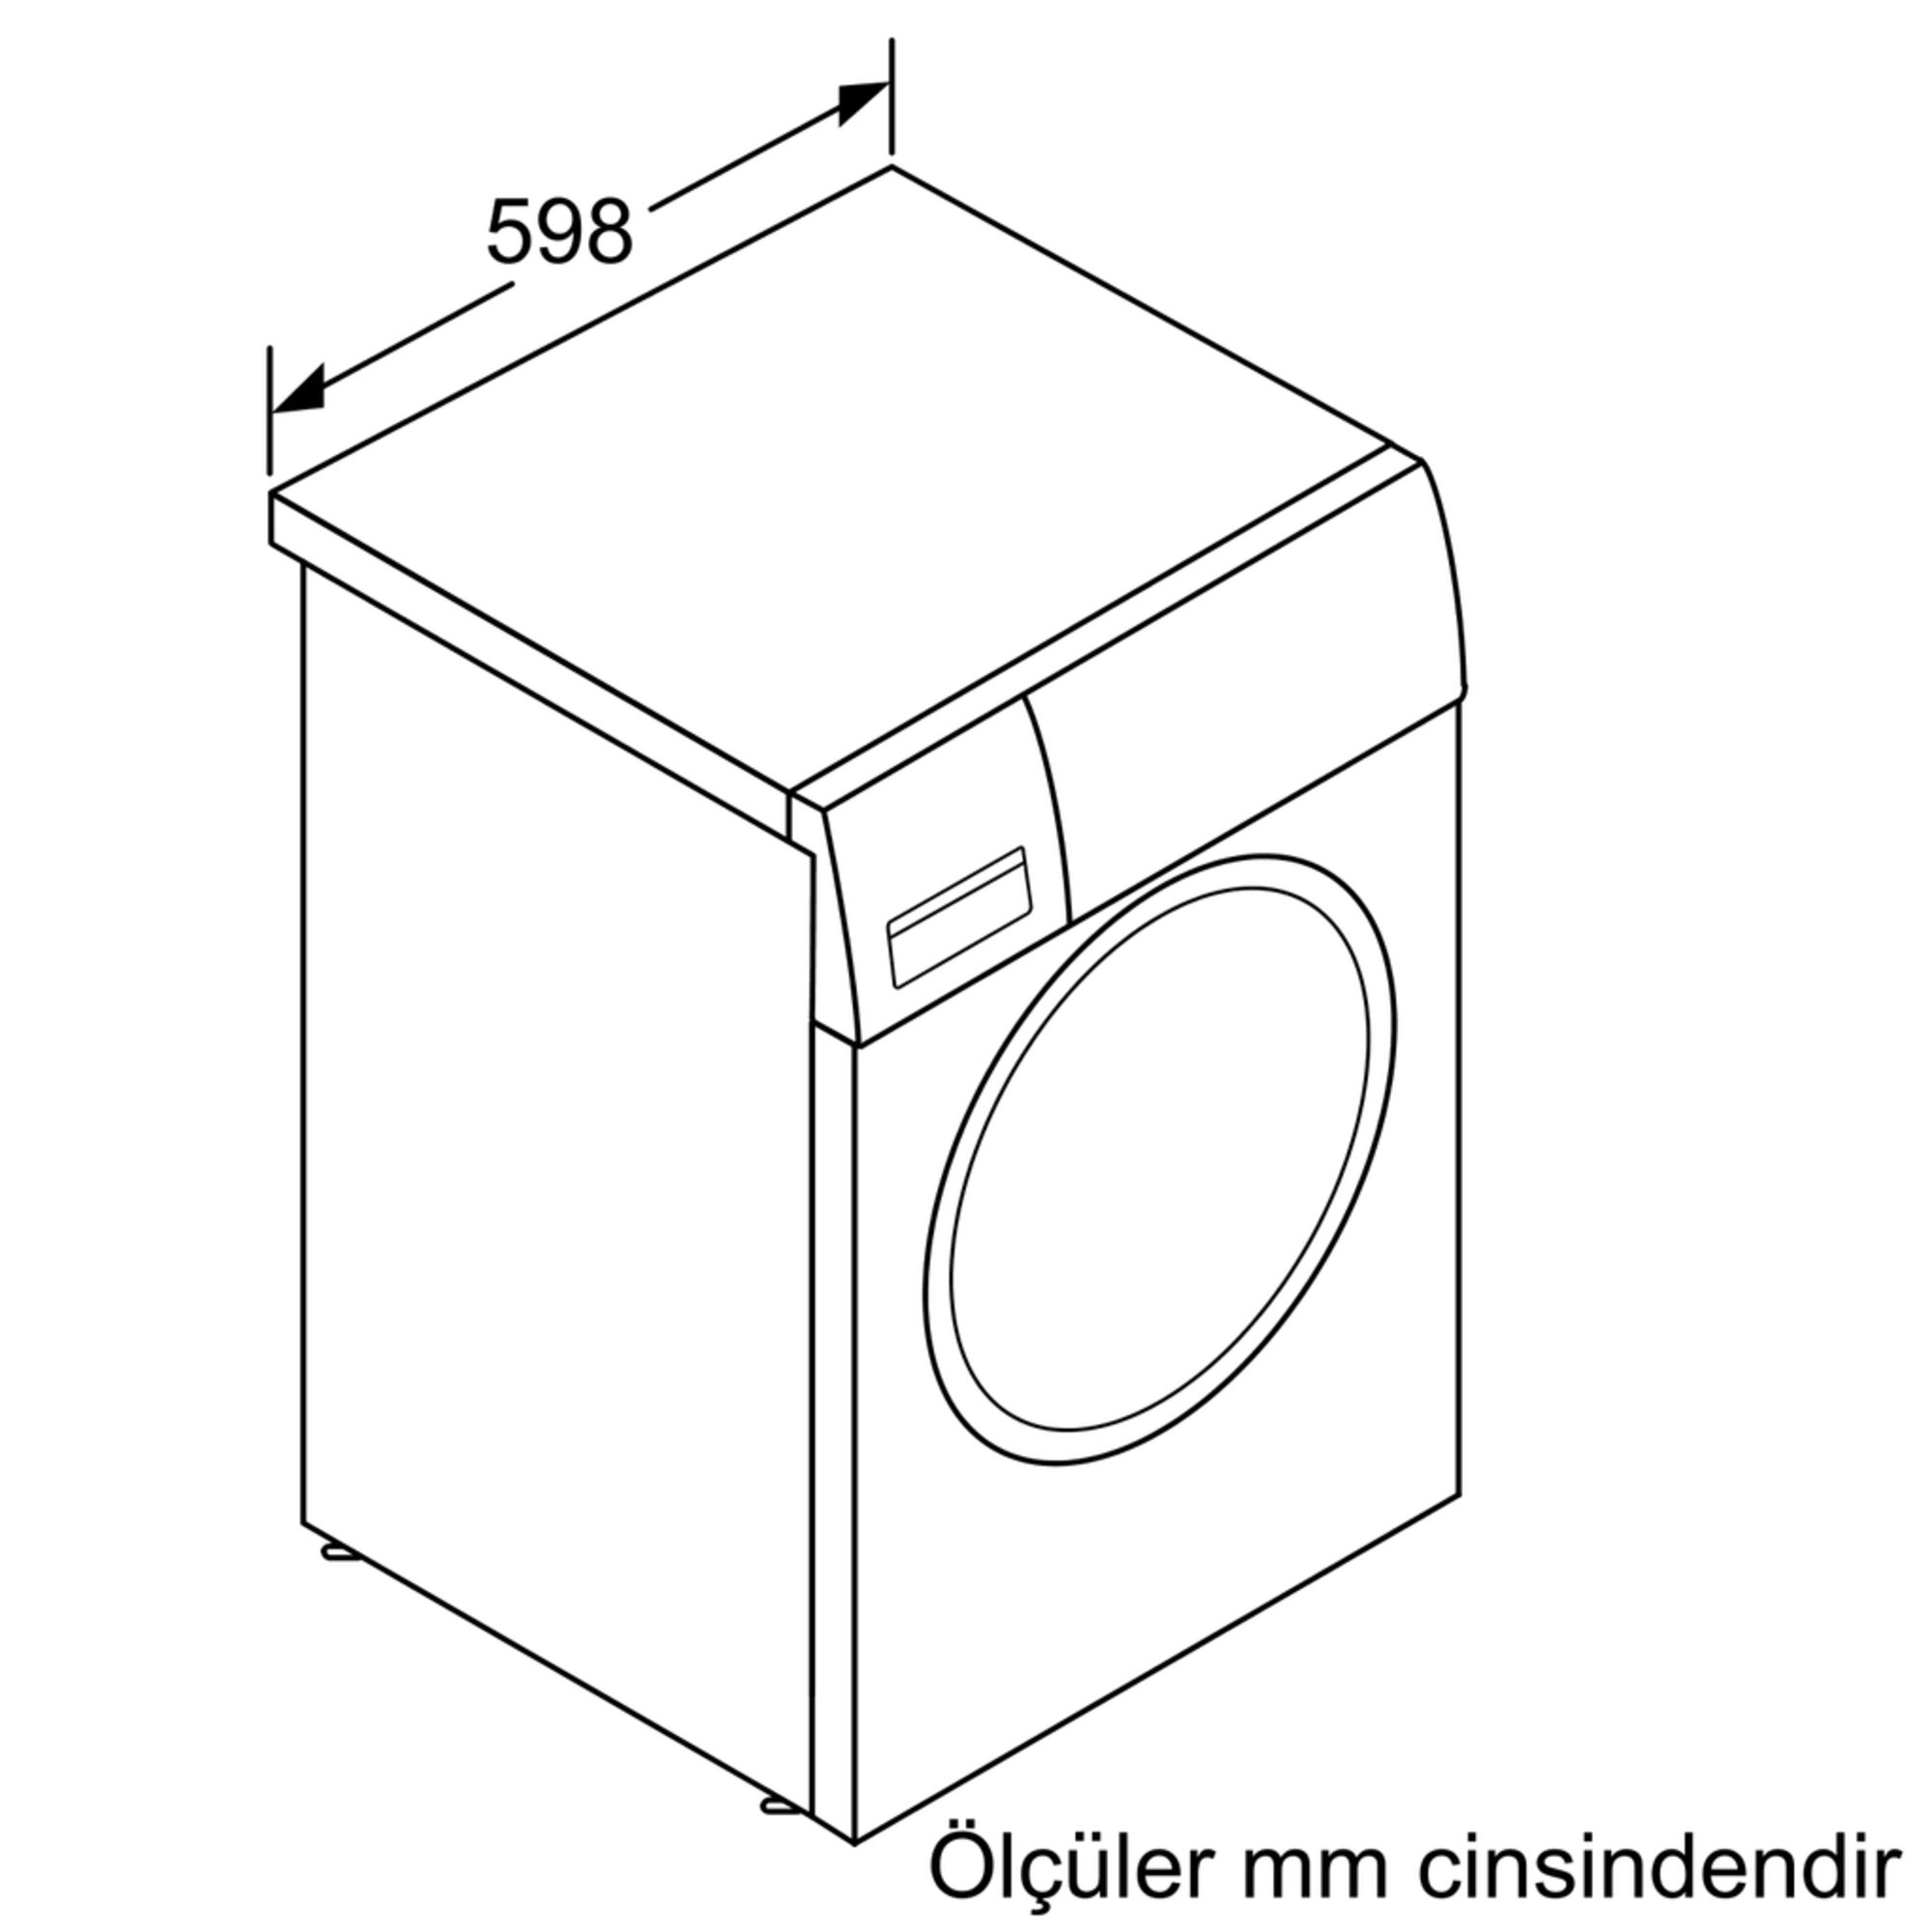 iQ500 Çamaşır Makinası 9 kg 1200 dev./dak.